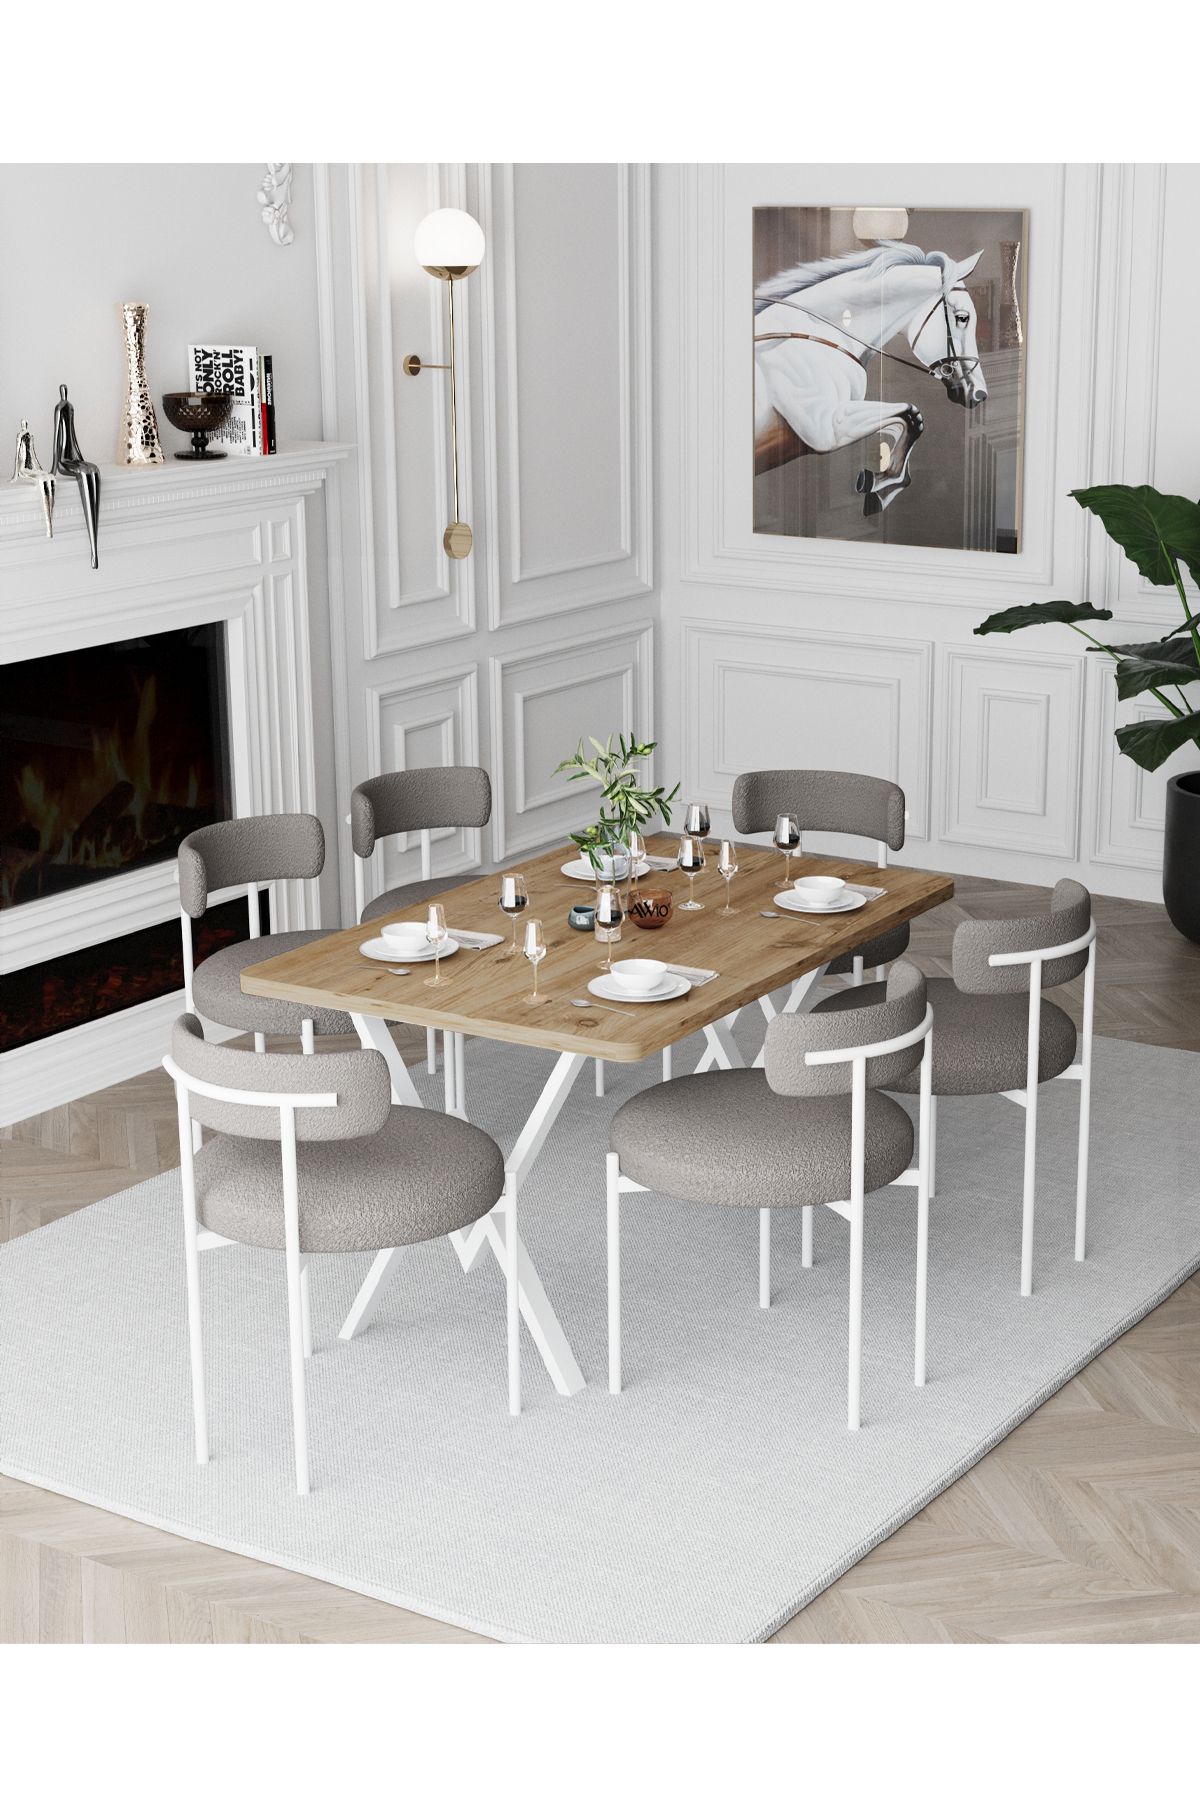 Avvio Larina Beyaz Teddy Sandalye 80x140 Yemek Masası Mutfak Masası 6 Kişilik Masa Sandalye Takımı